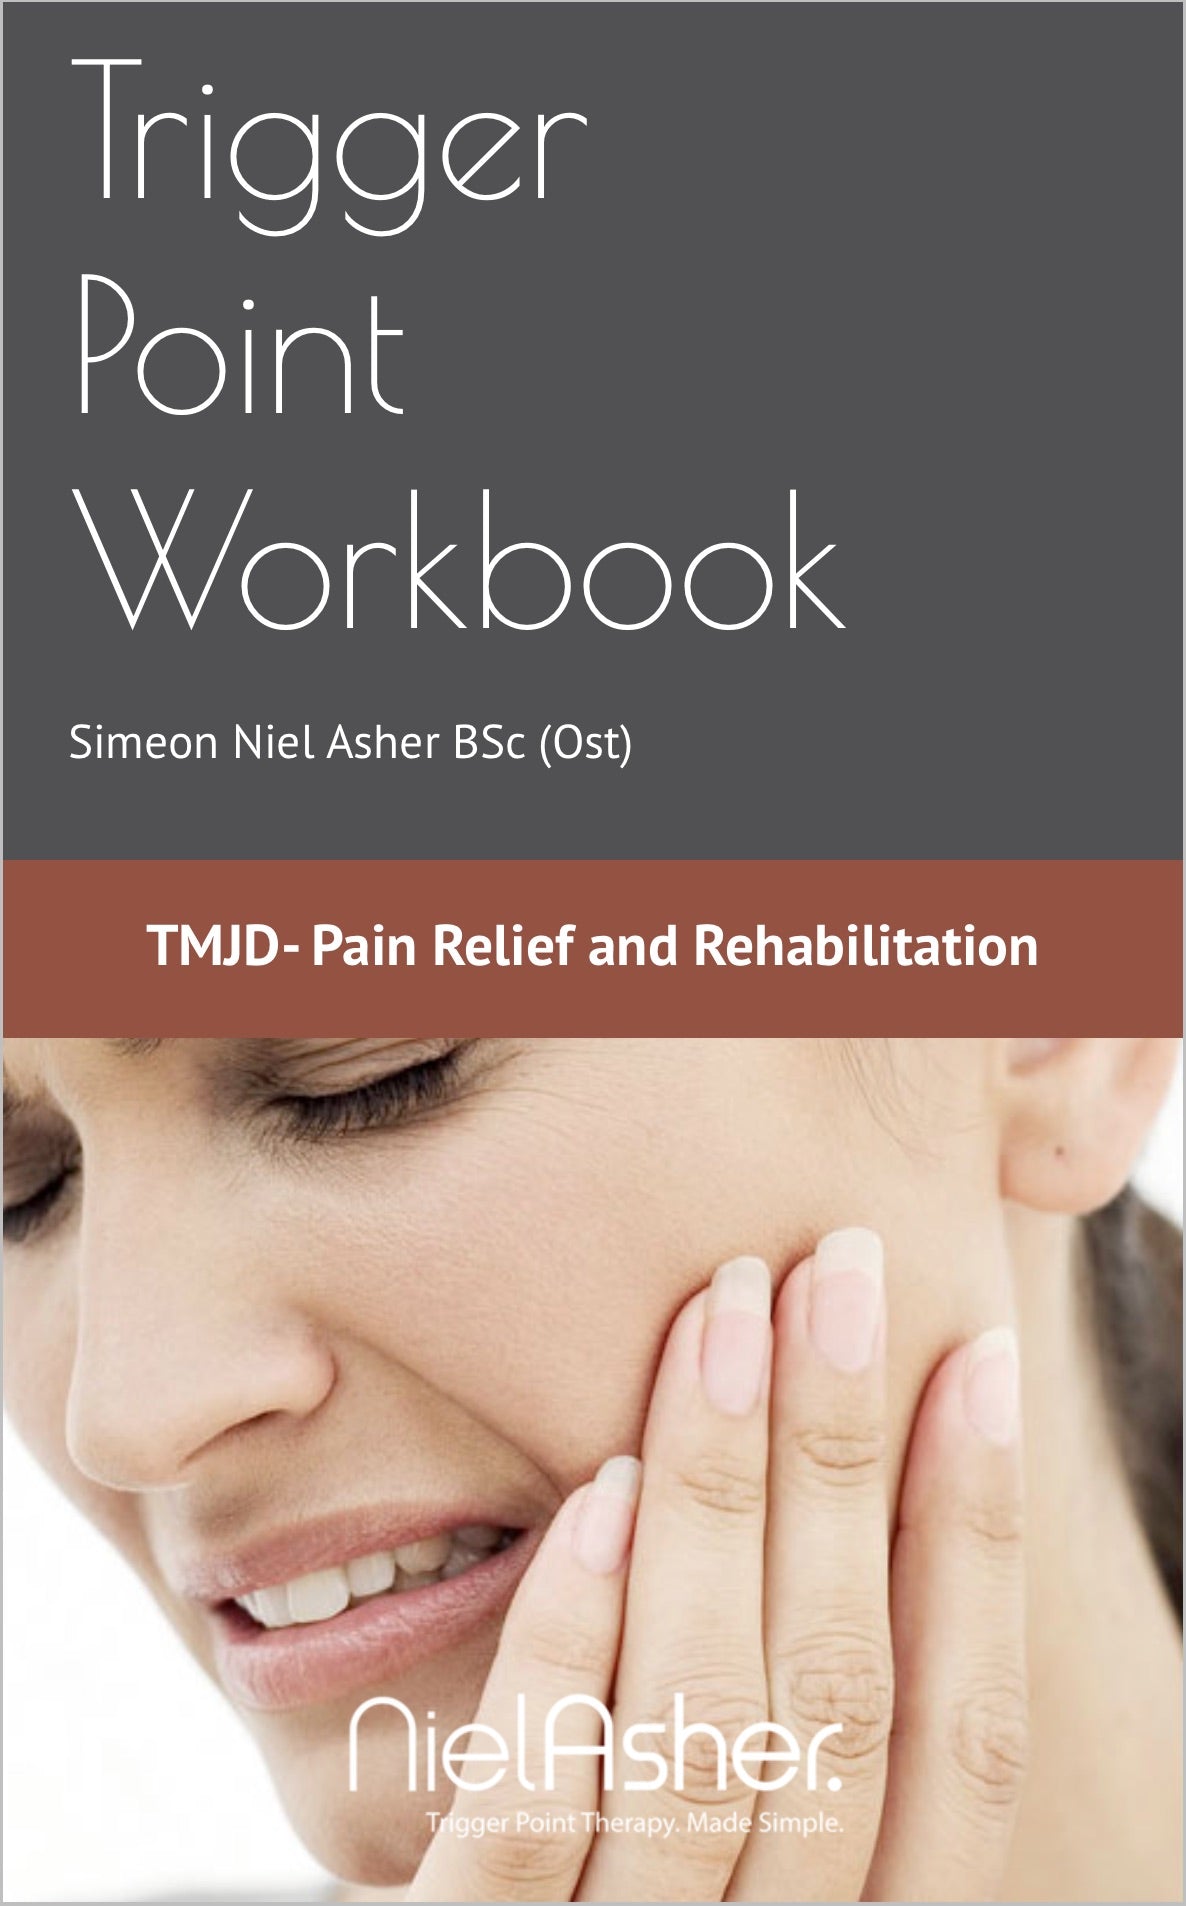 TMJD - Trigger Point Workbook (Digital Download)